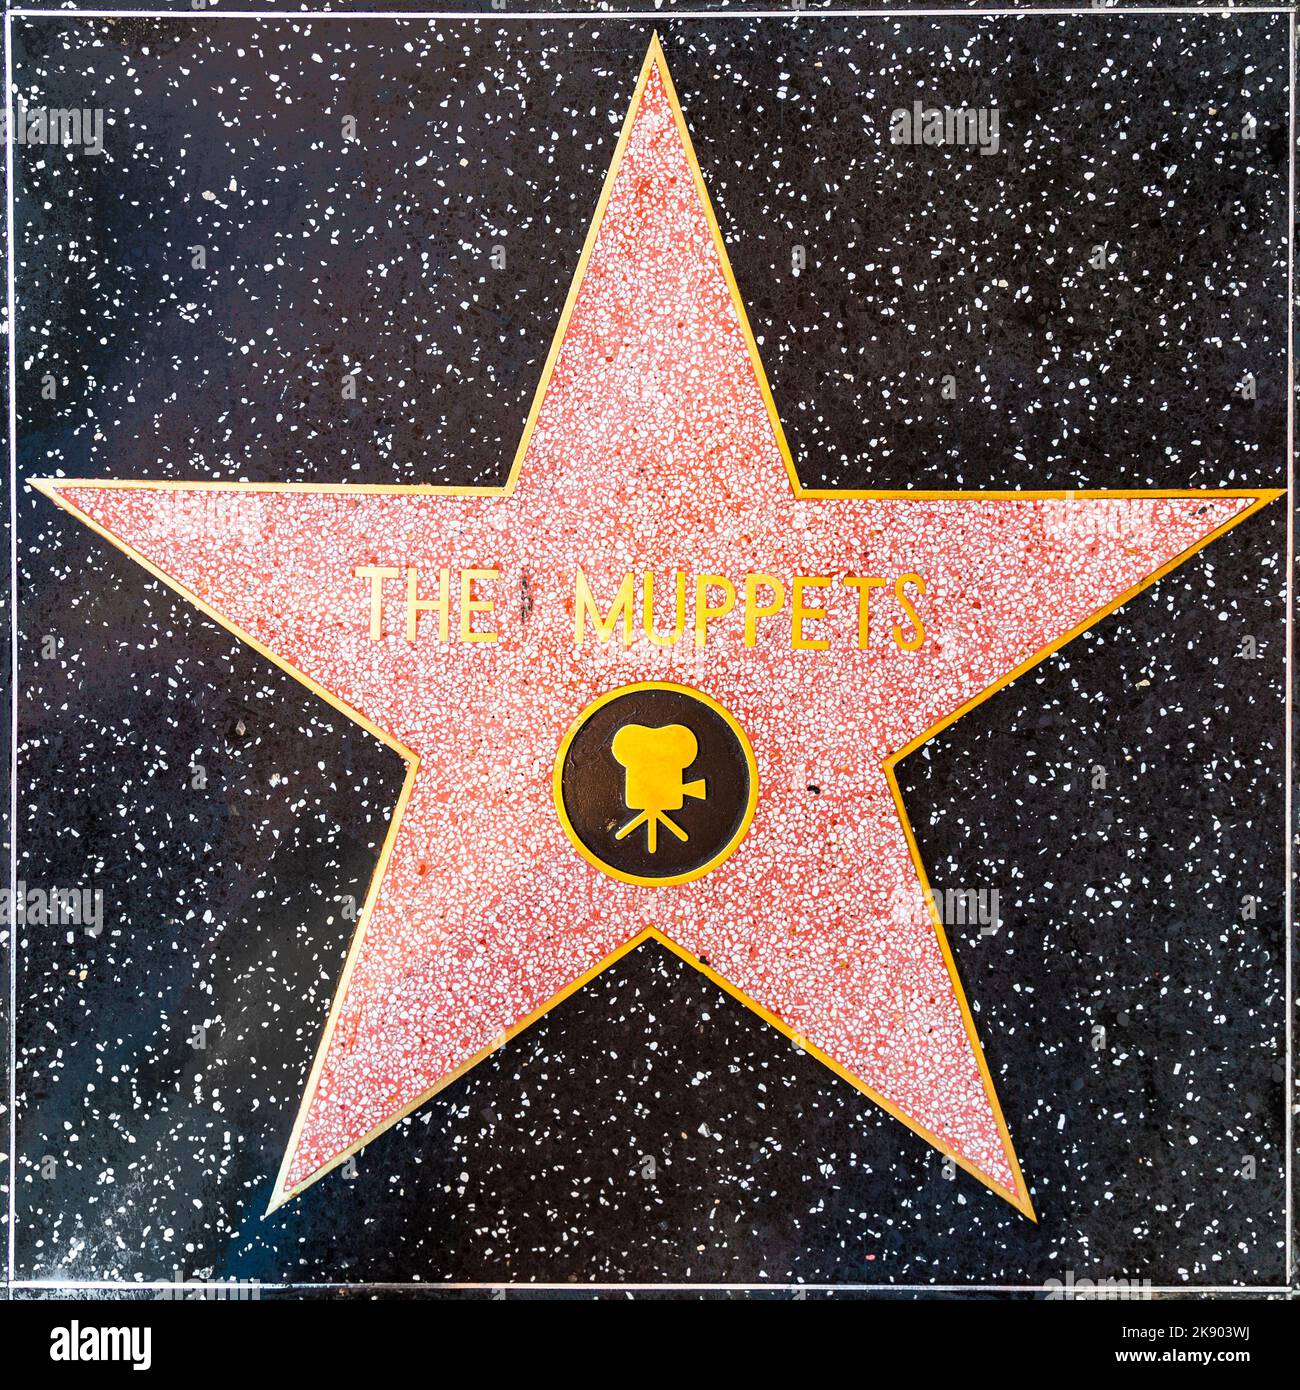 Los Angeles, USA - 24. Juni 2012: Der Muppets-Star auf dem Hollywood Walk of Fame in Hollywood, Kalifornien. Dieses Hotel liegt am Hollywood Blvd. Und ist es auch Stockfoto